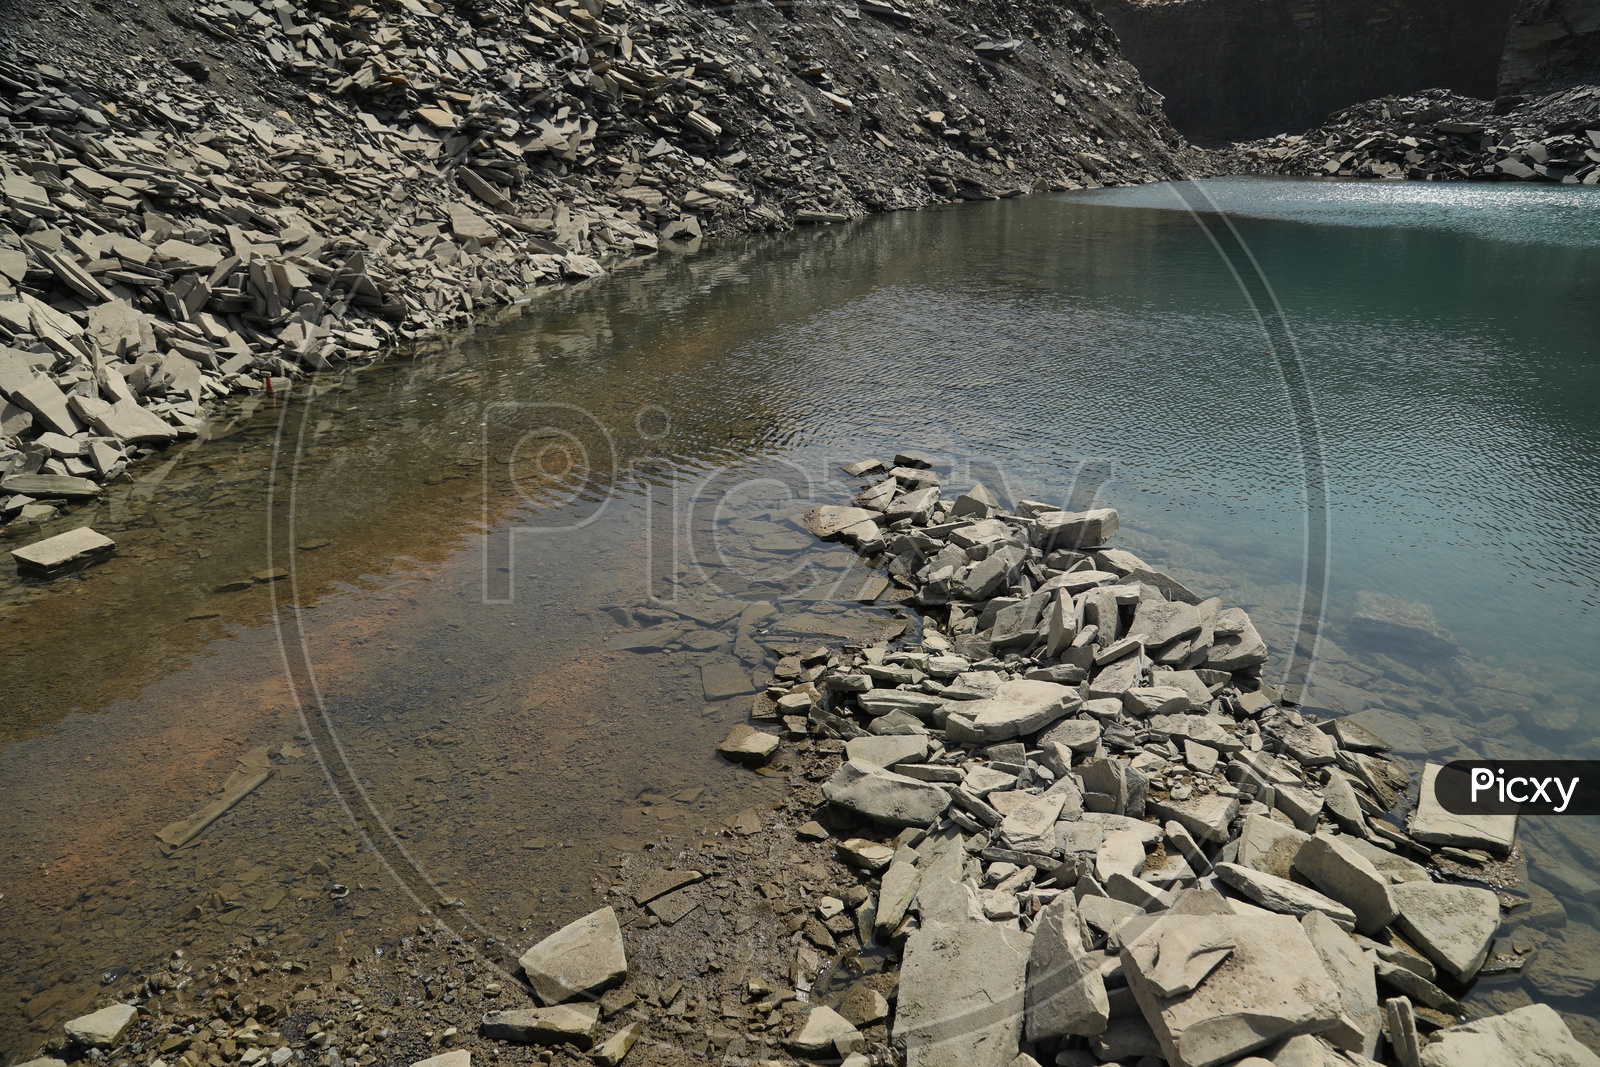 Water flow near Black stone mining area